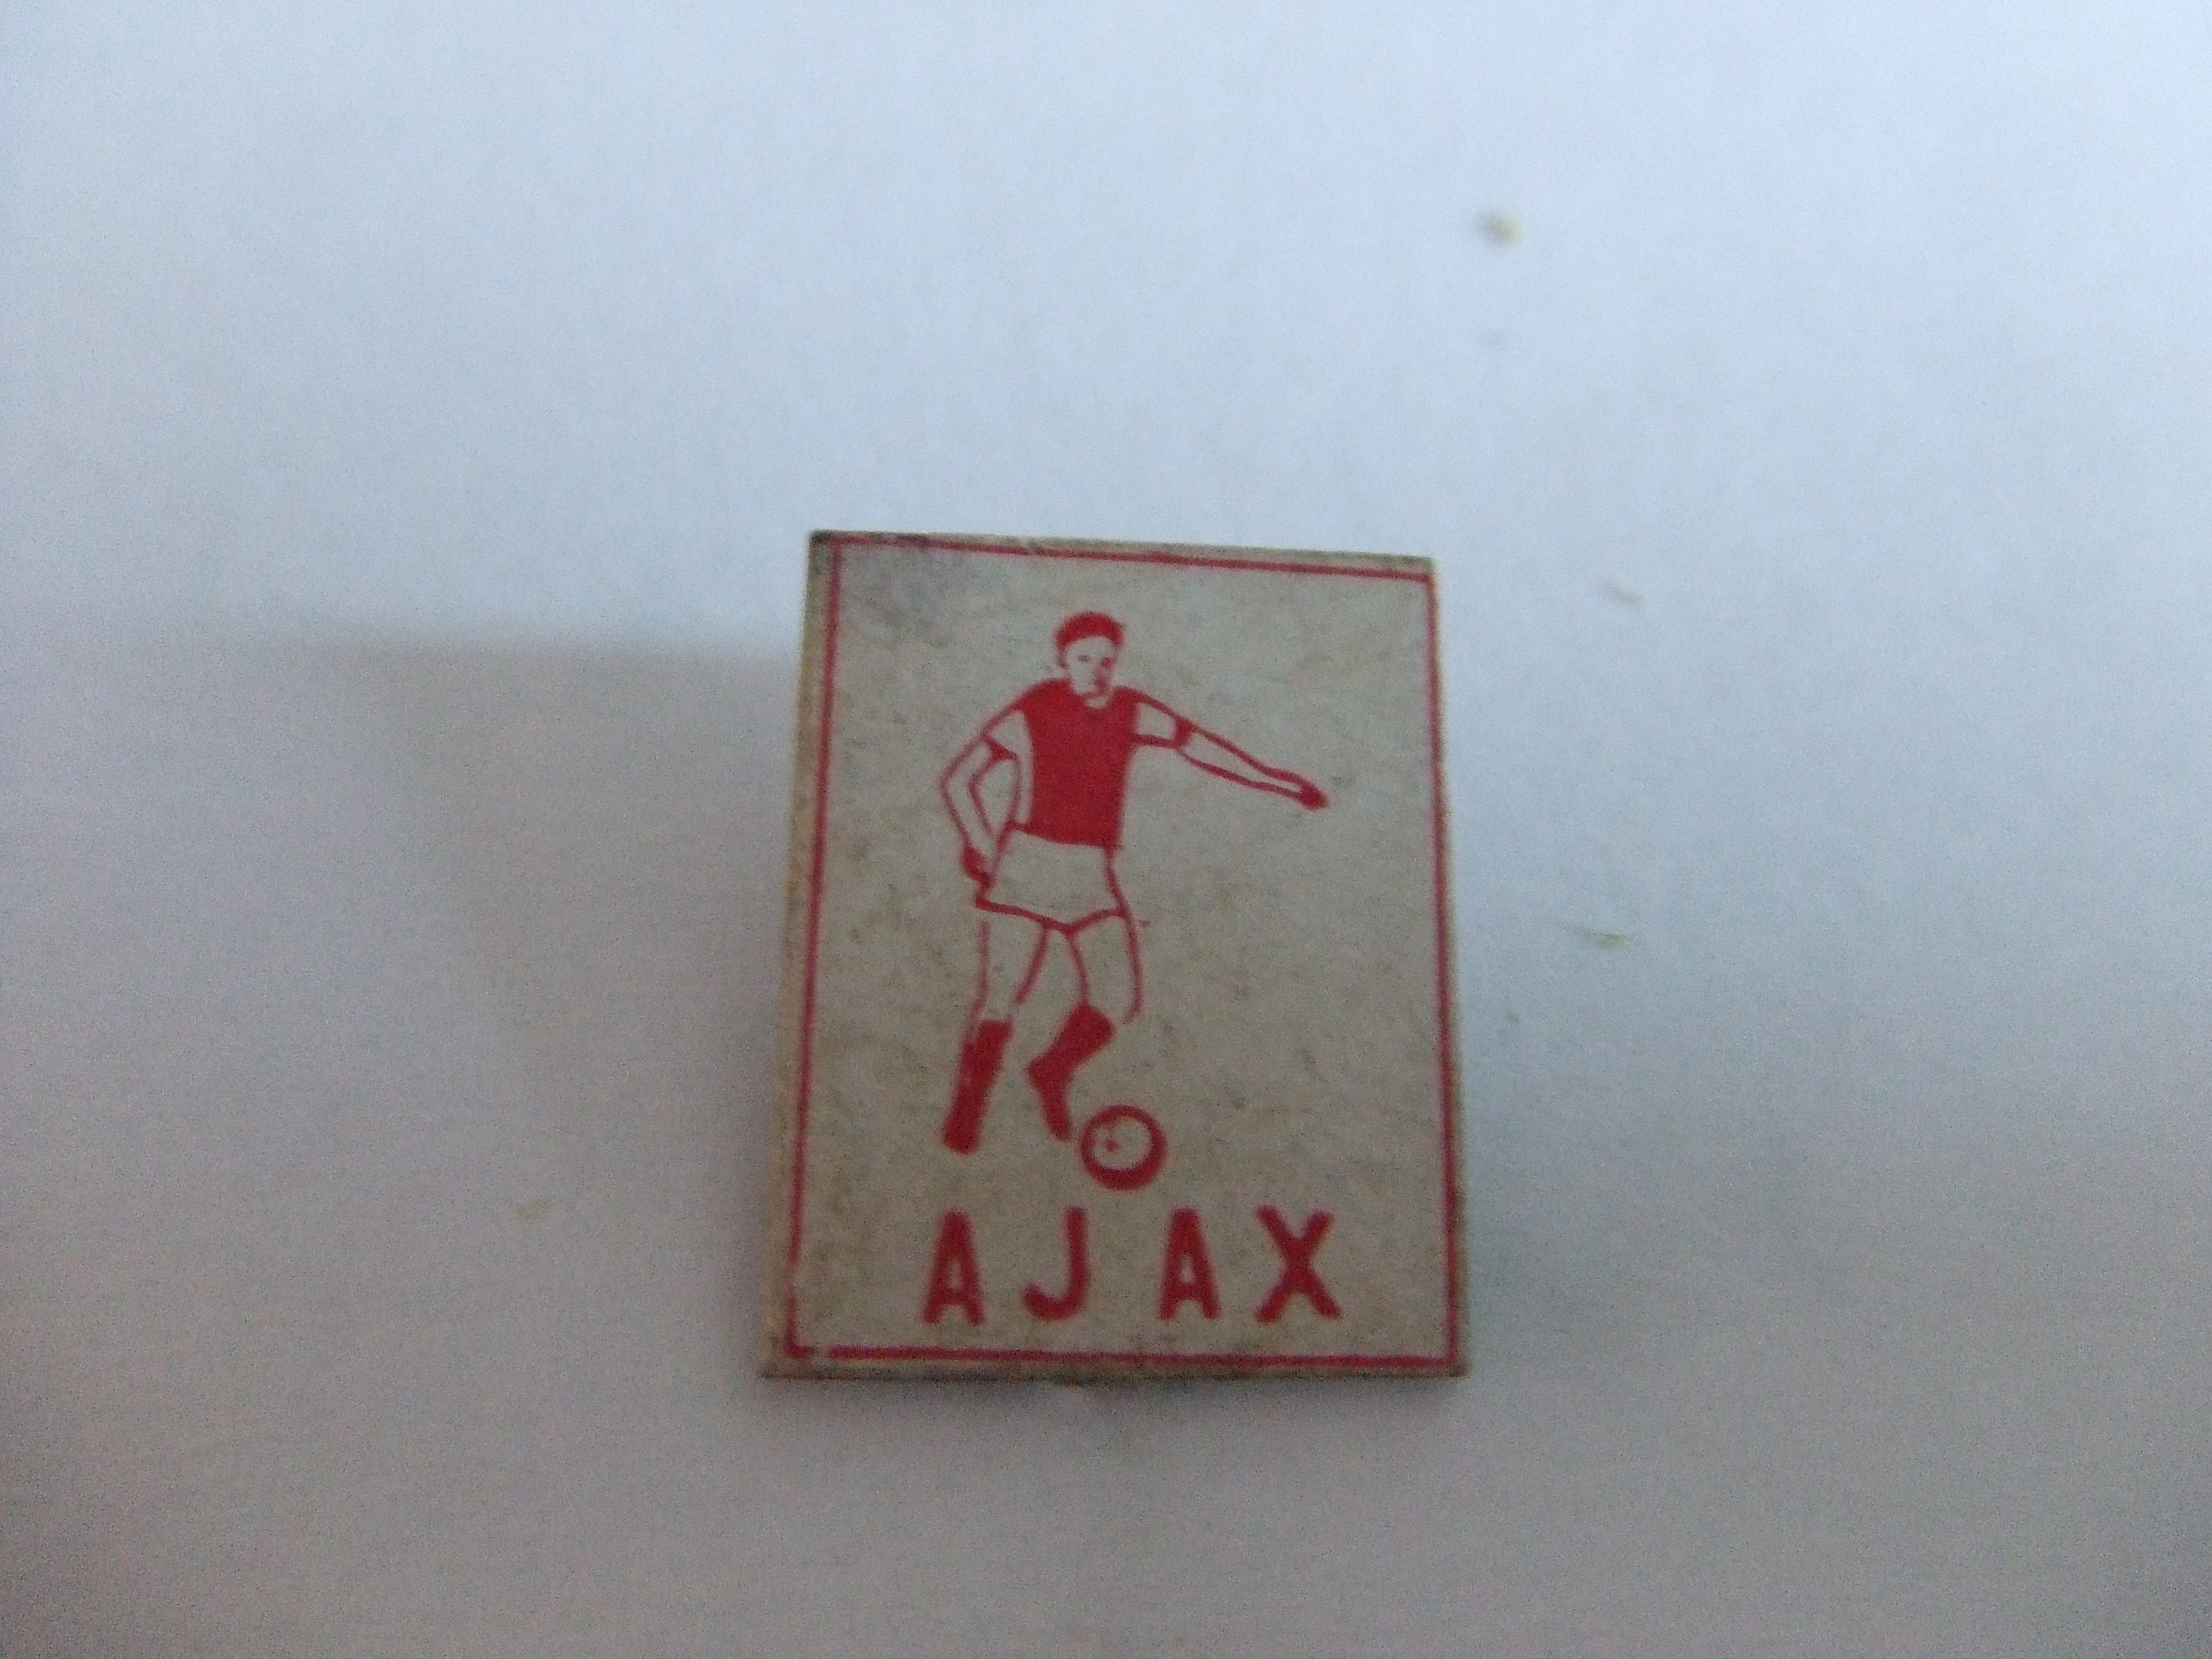 Ajax (2)